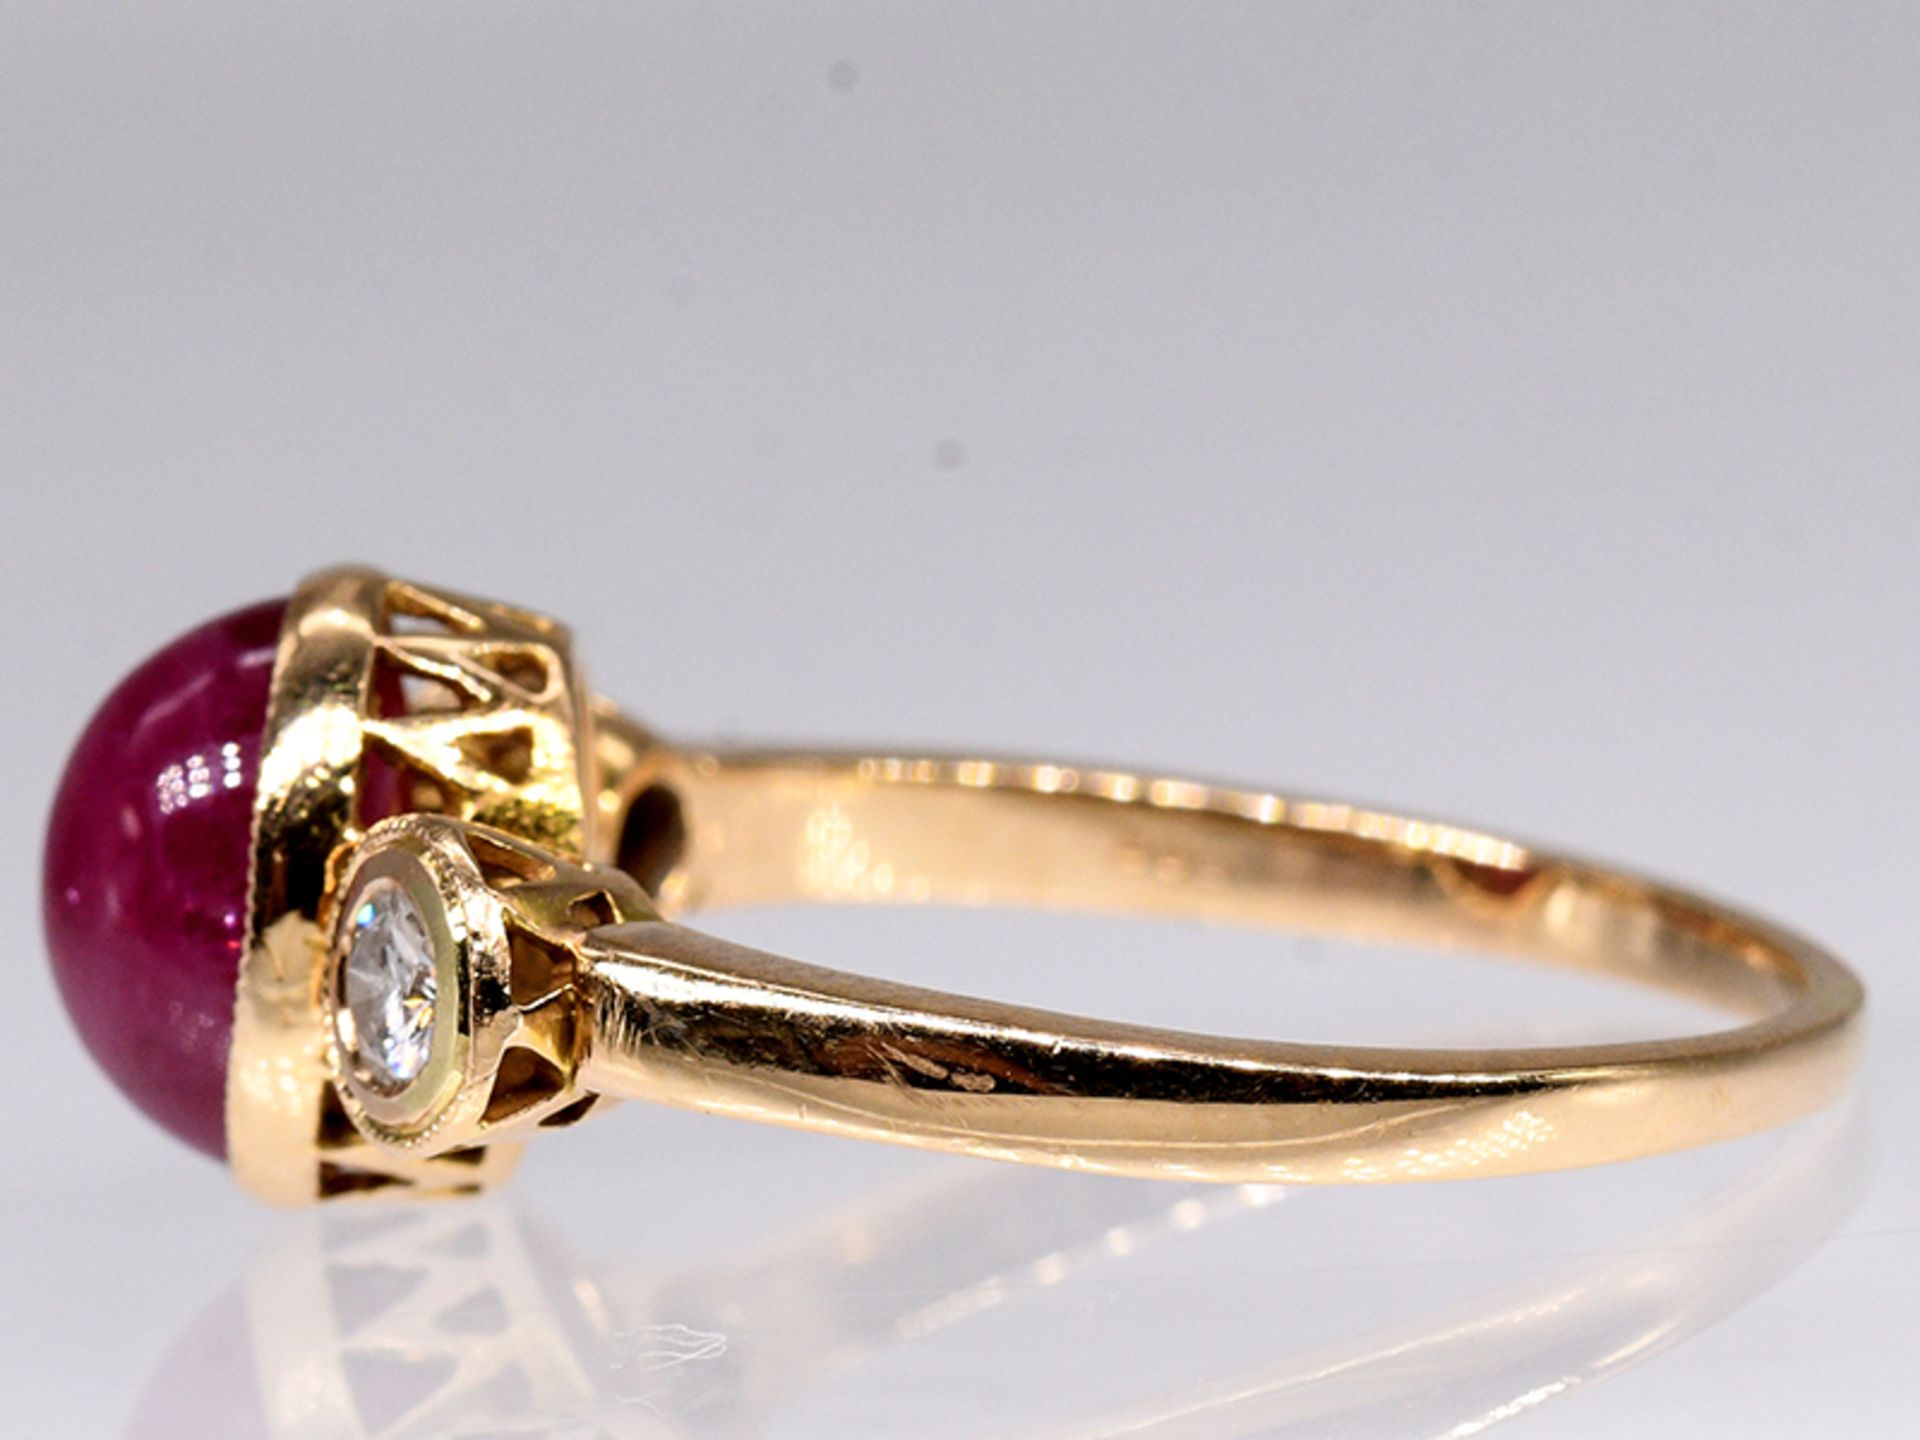 Ring mit Rubin-Cabochon und 2 Brillanten, zus. ca. 0,15 ct, 80- er Jahre. 585/- Gelbgold. - Bild 3 aus 4